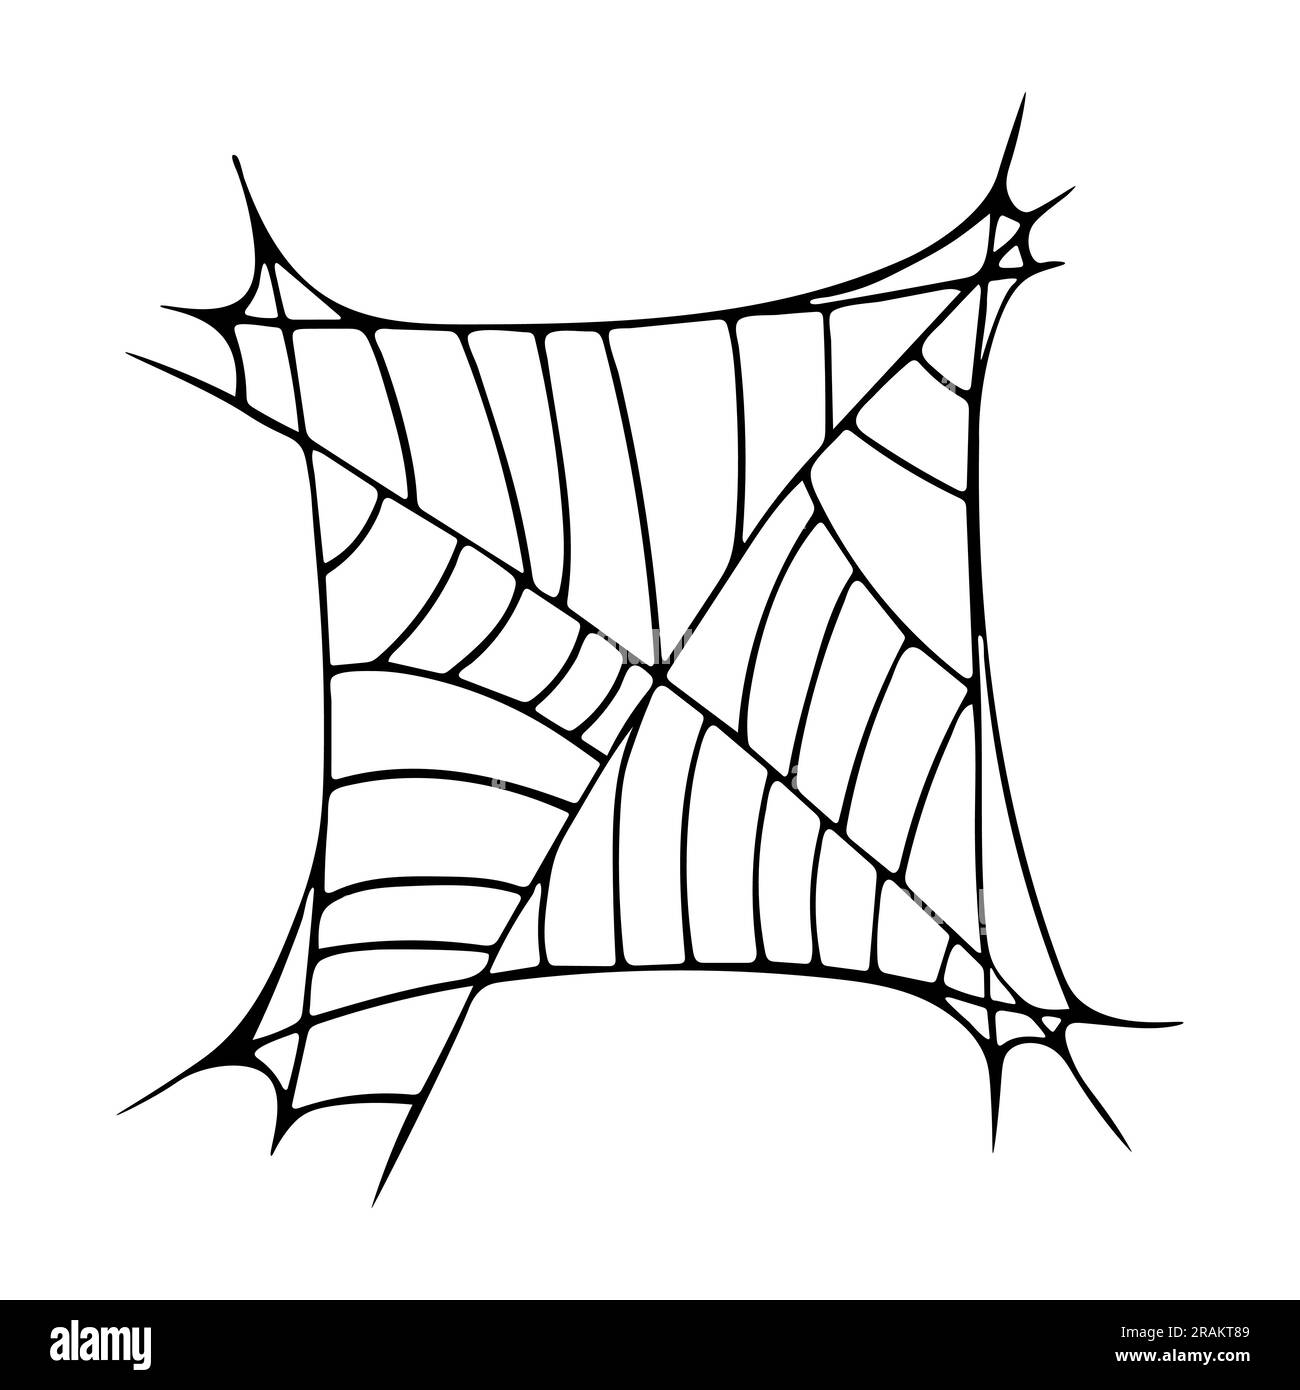 Black web on white background Vector illustration Stock Vector